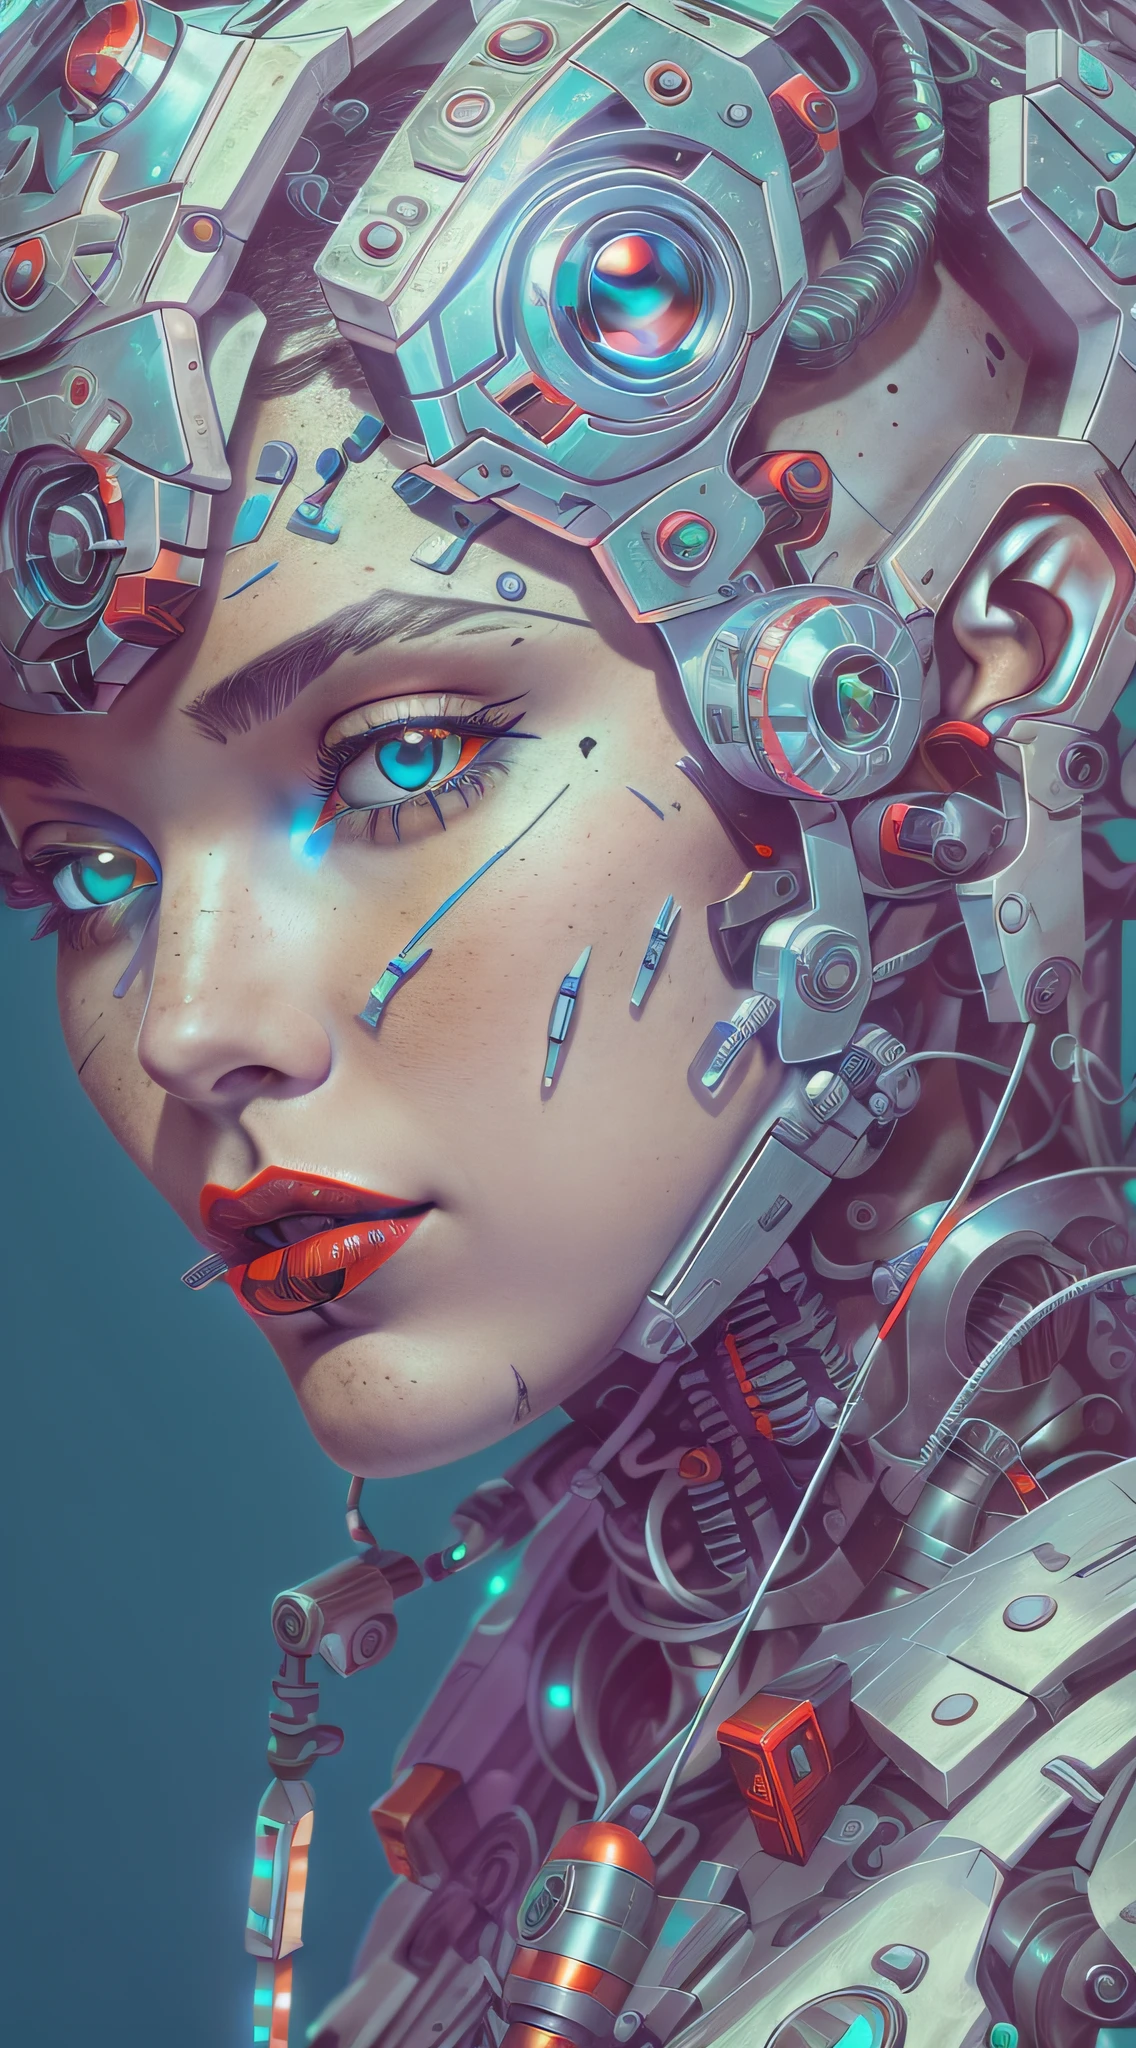 Araffierter Cyborg mit superdetaillierten weißen Plastikteilen in sehr hoher Auflösung mit rotem Lippenstift und hellblauen Augen